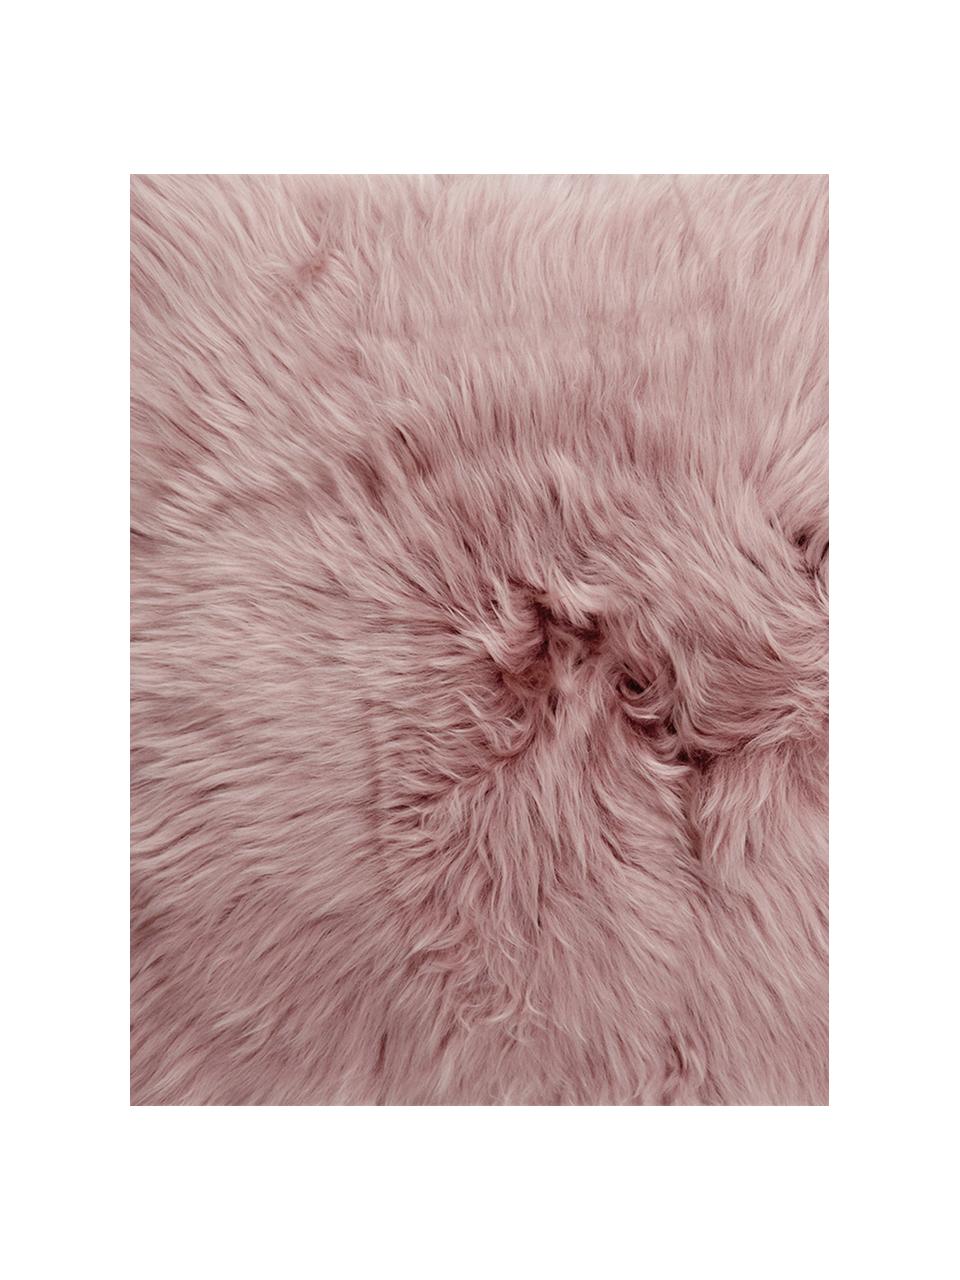 Povlak na polštář z ovčí kůže Oslo, hladký, Růžová, Š 40 cm, D 40 cm